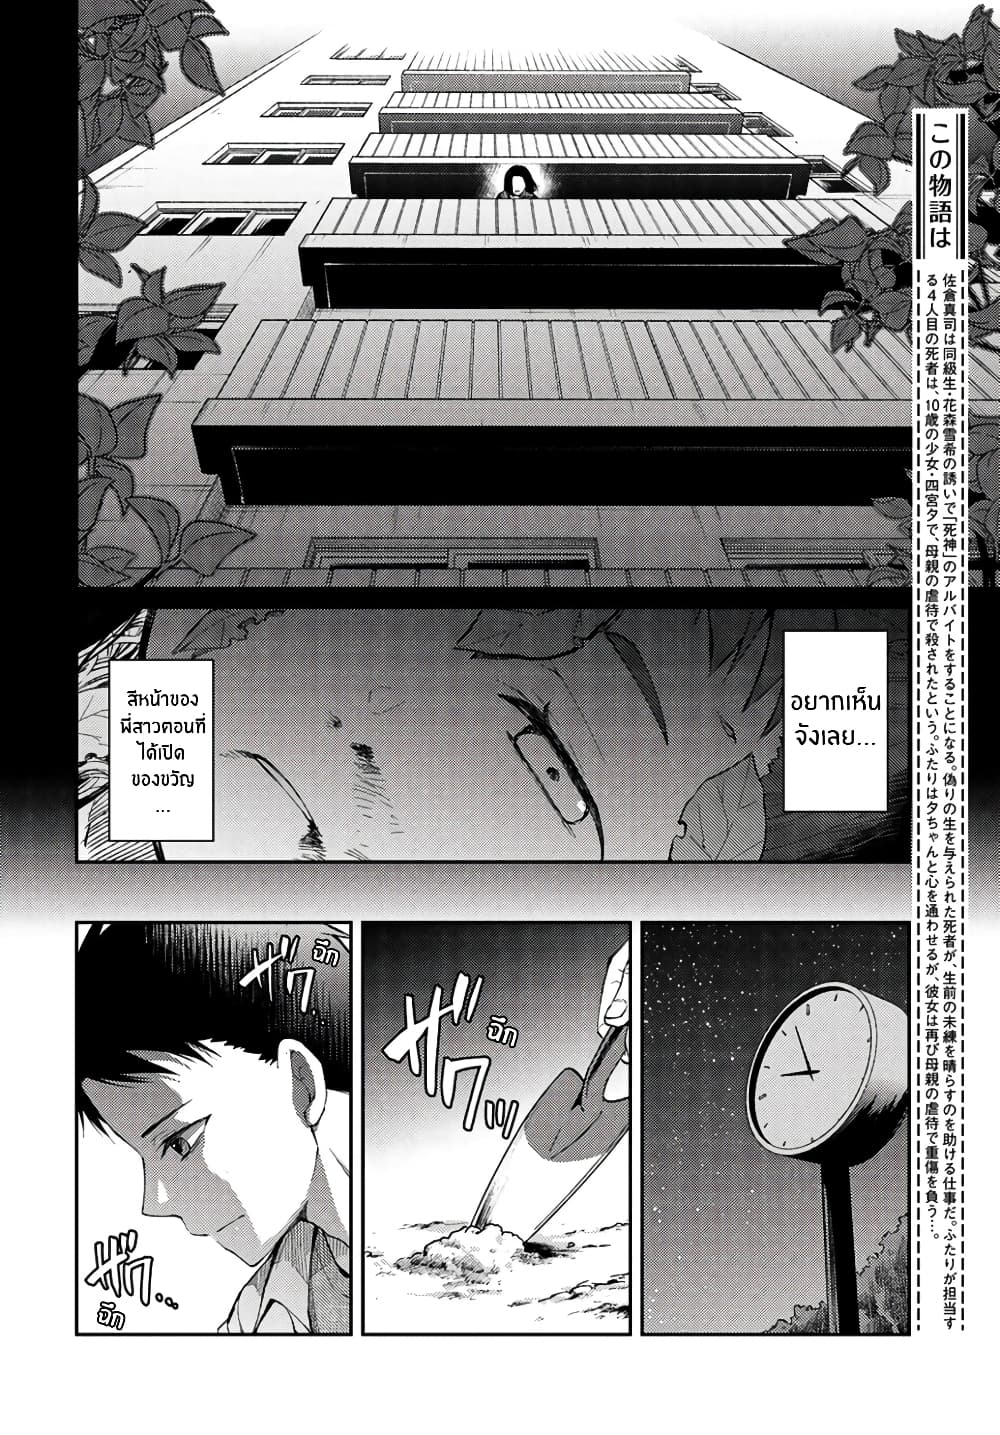 Jikyuu Sanbyaku En no Shinigami 8 (4)